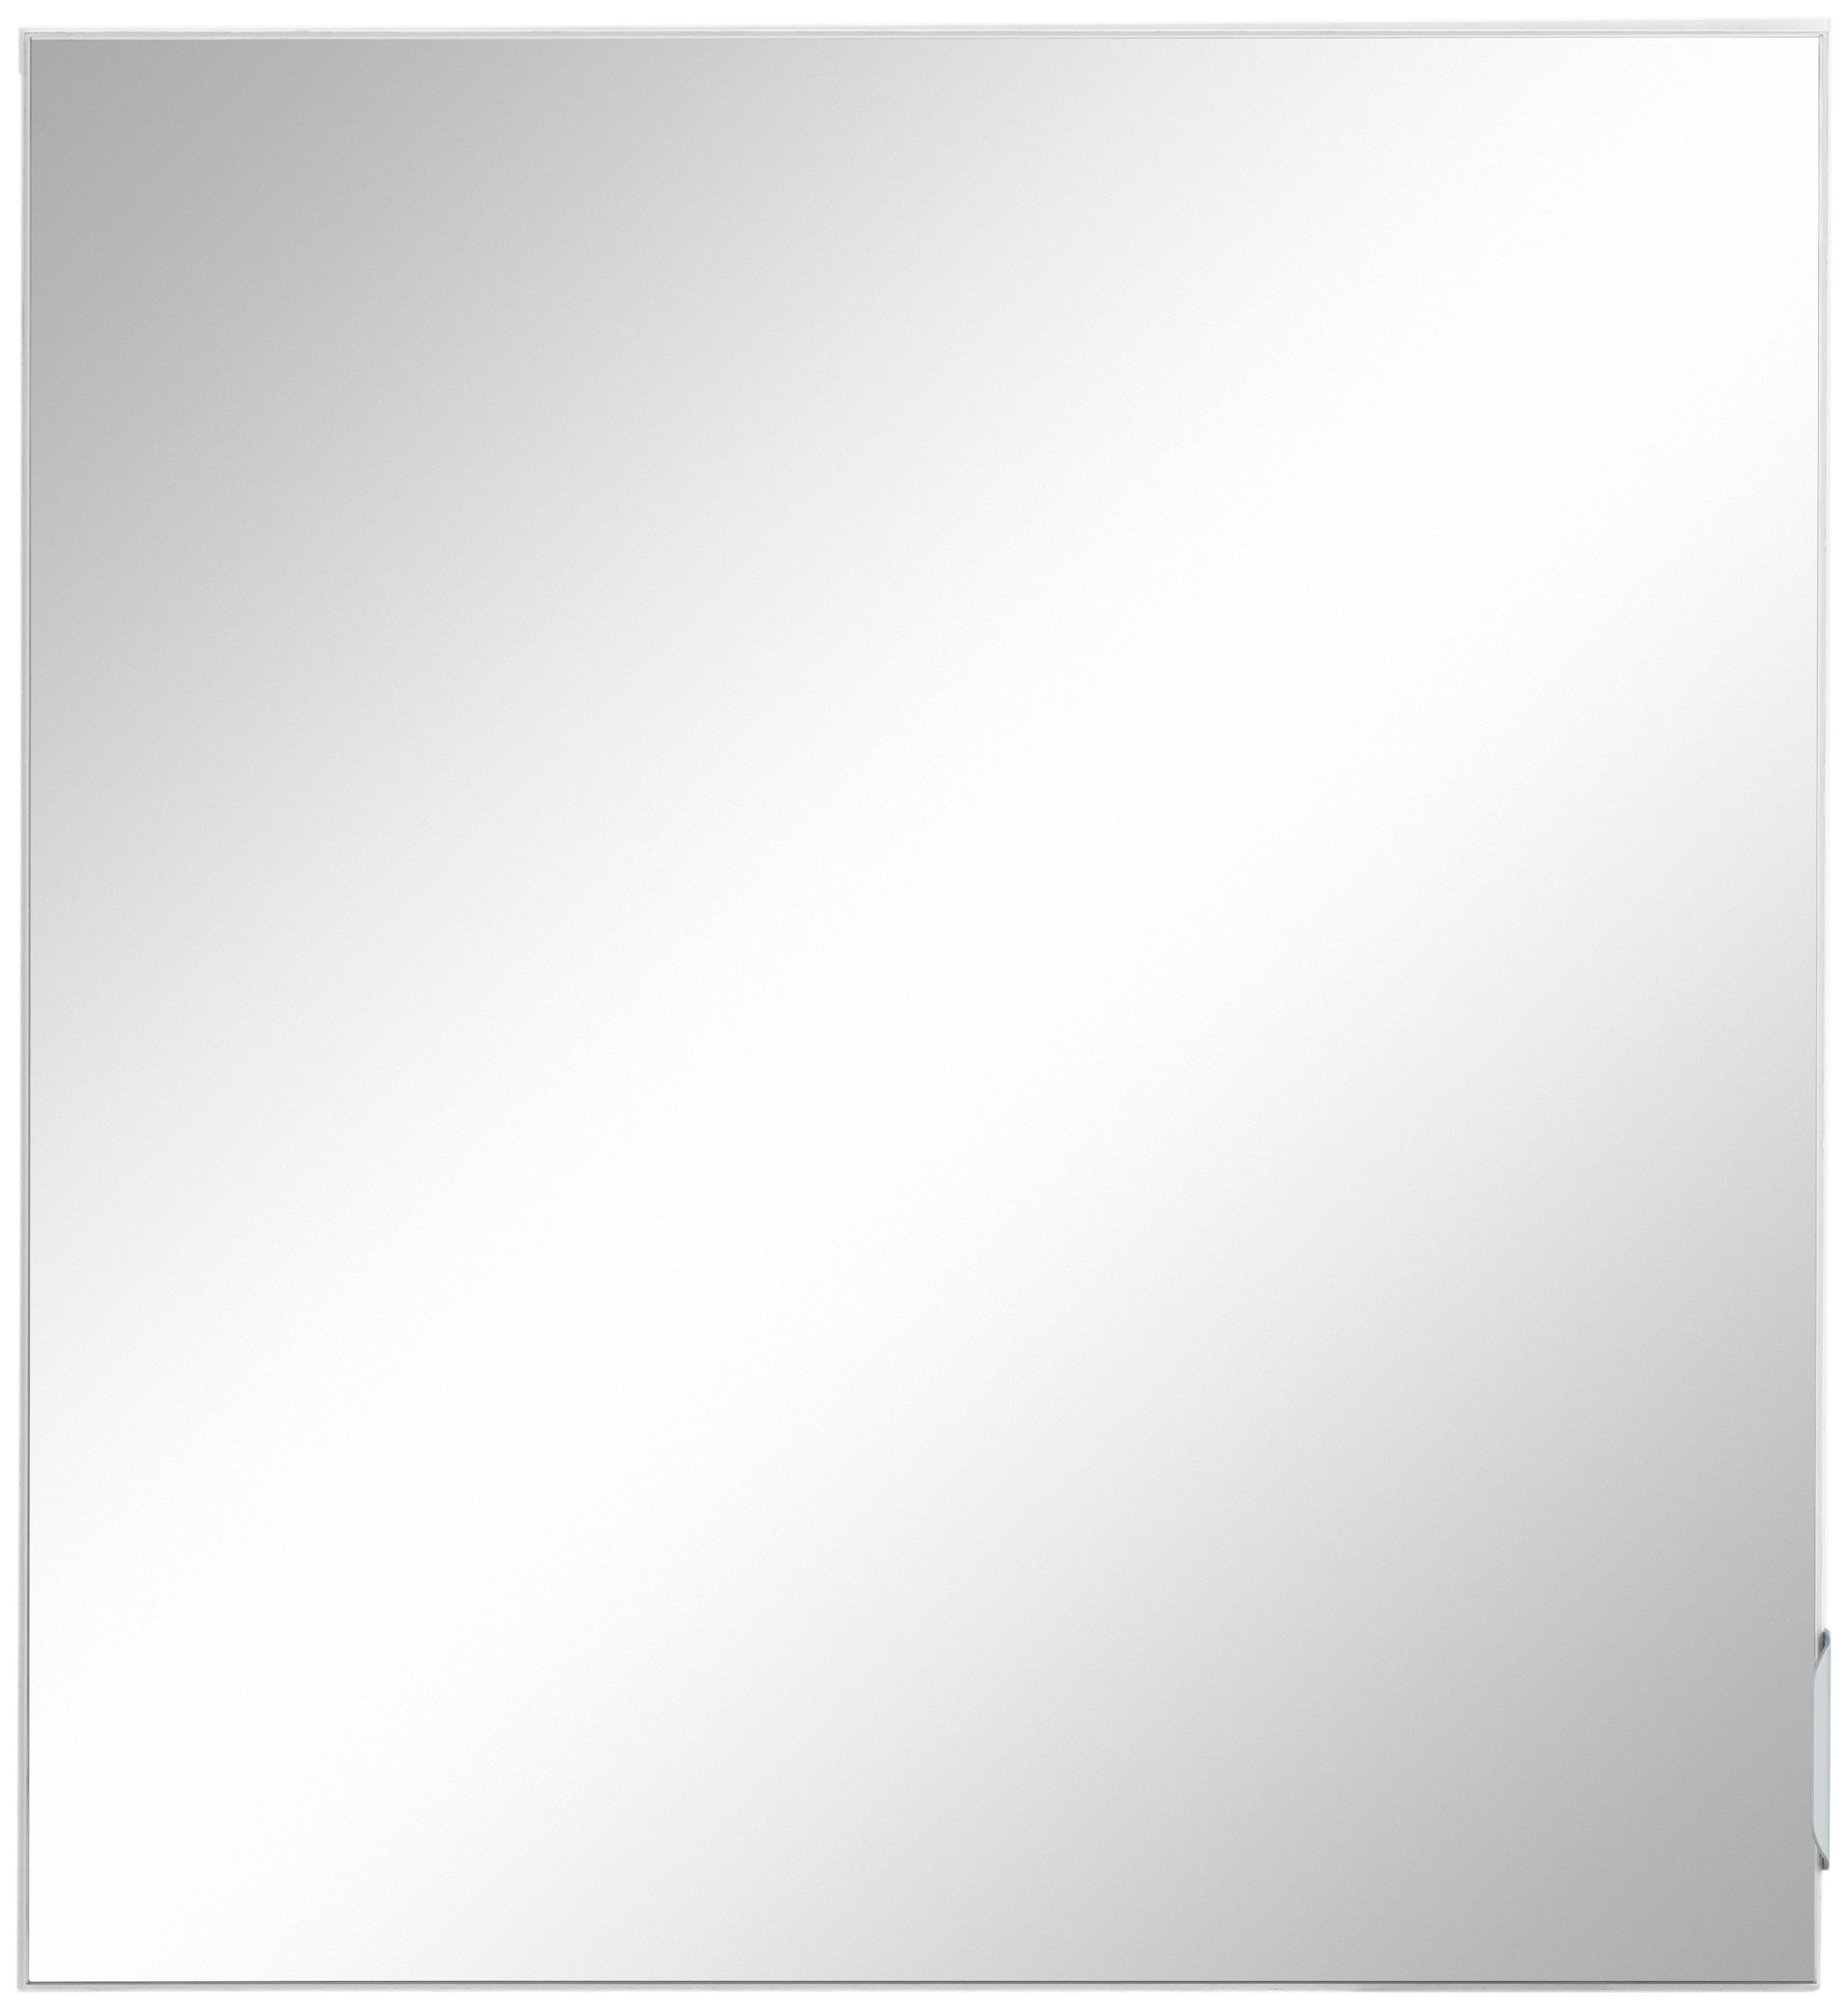 welltime Spiegelschrank "Lage, Badschrank, Badezimmerschrank, 60 cm breit", Pflegeleichte Oberfläche, FSC-zertifiziert